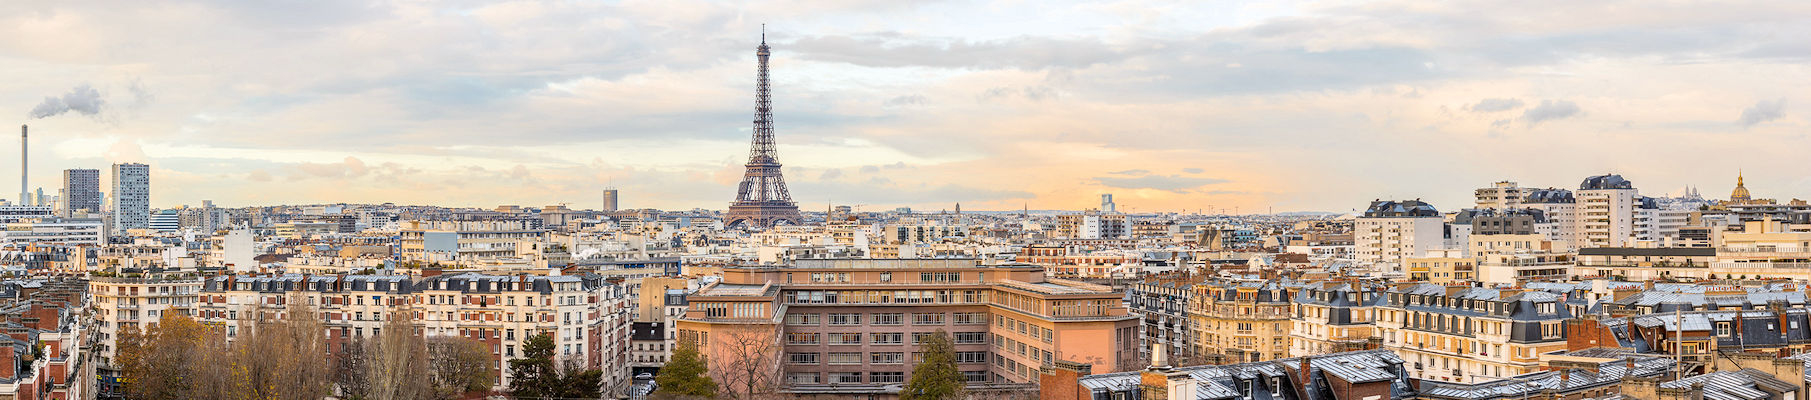 PARIS BEST TOUR | THE EIFFEL TOWER - Paris Webservices